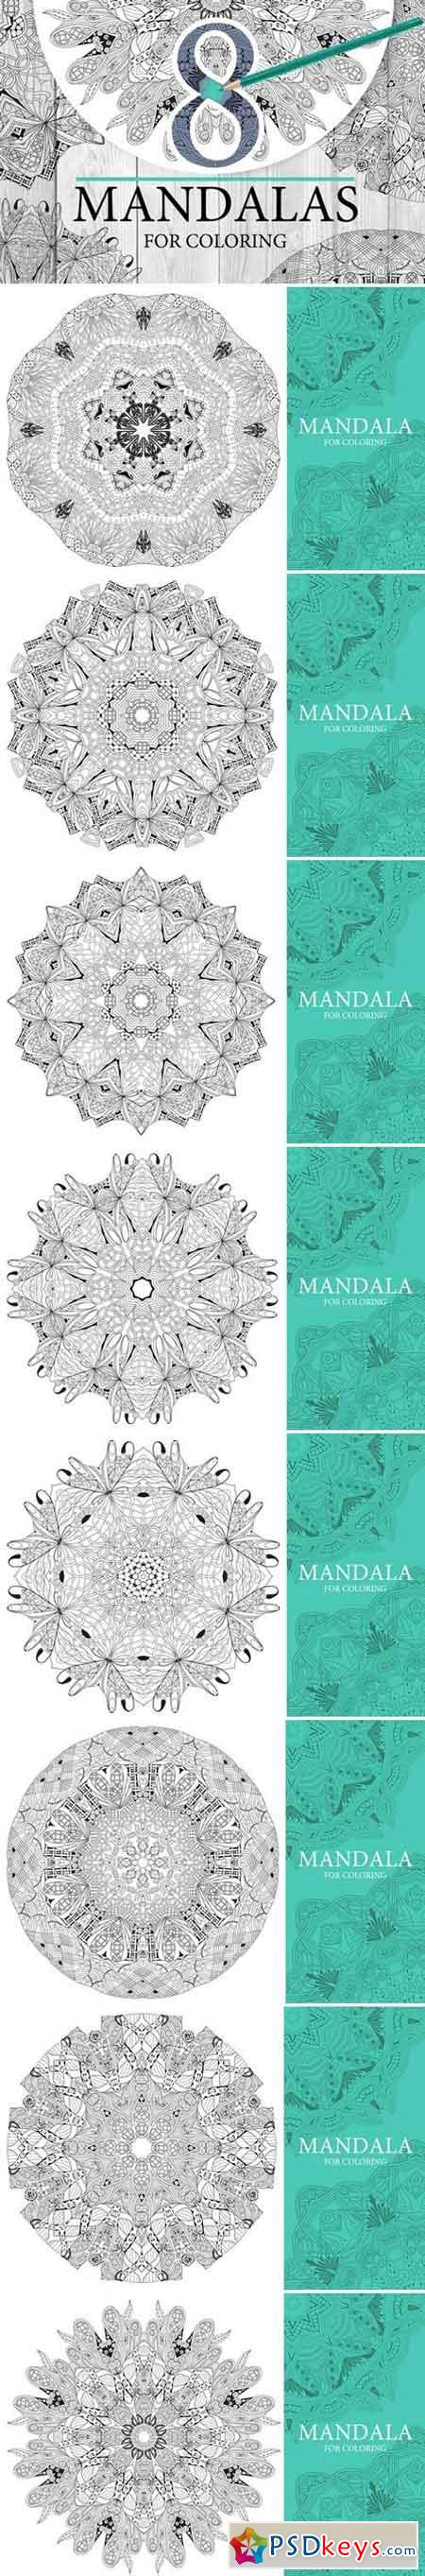 Mandalas for coloring2 2025266